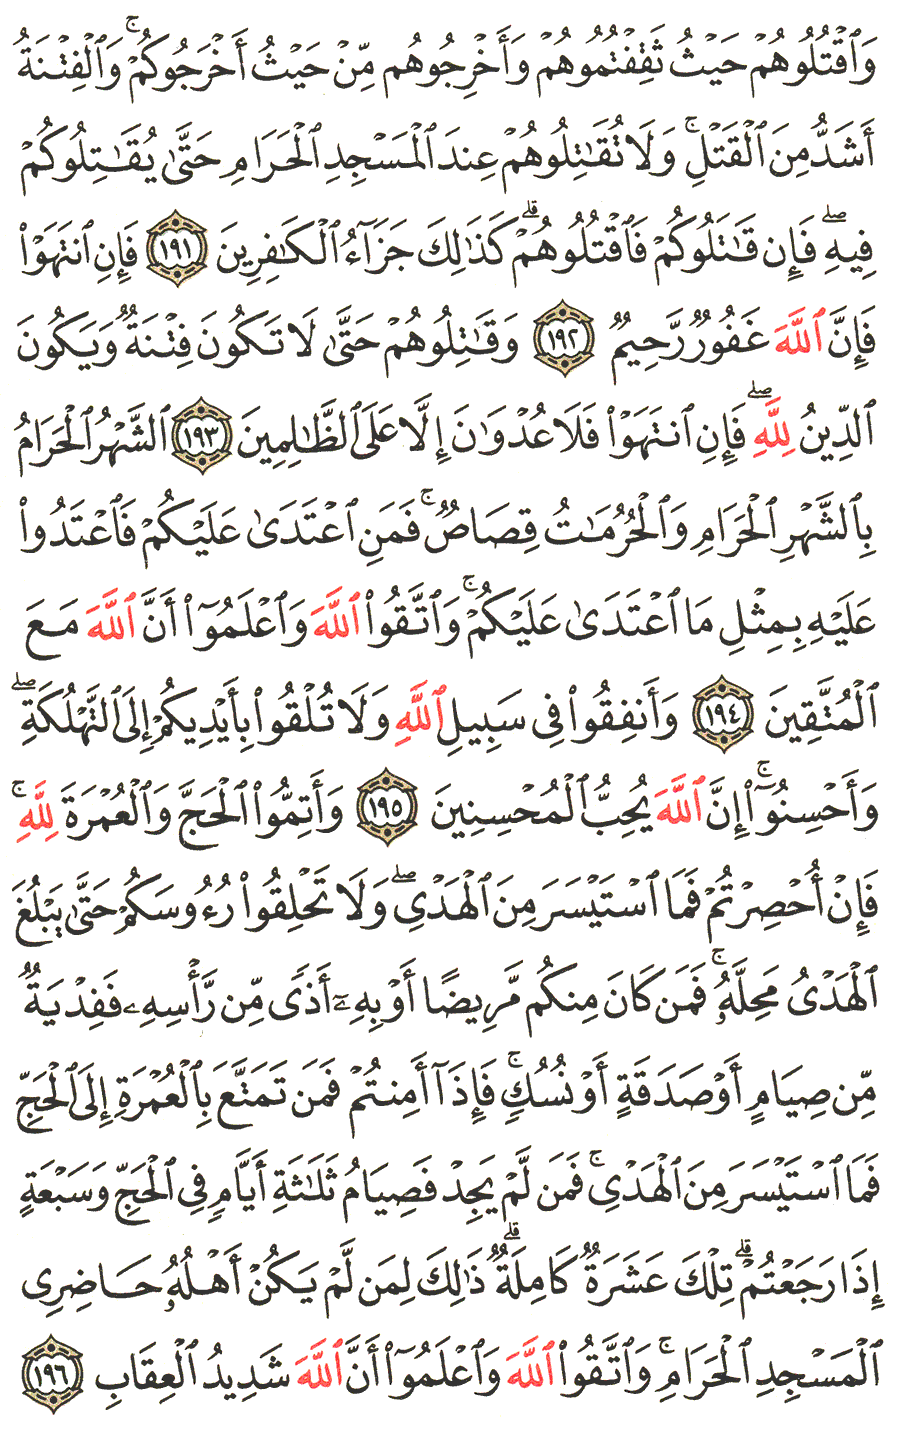 الصفحة رقم  30 من القرآن الكريم مكتوبة من المصحف